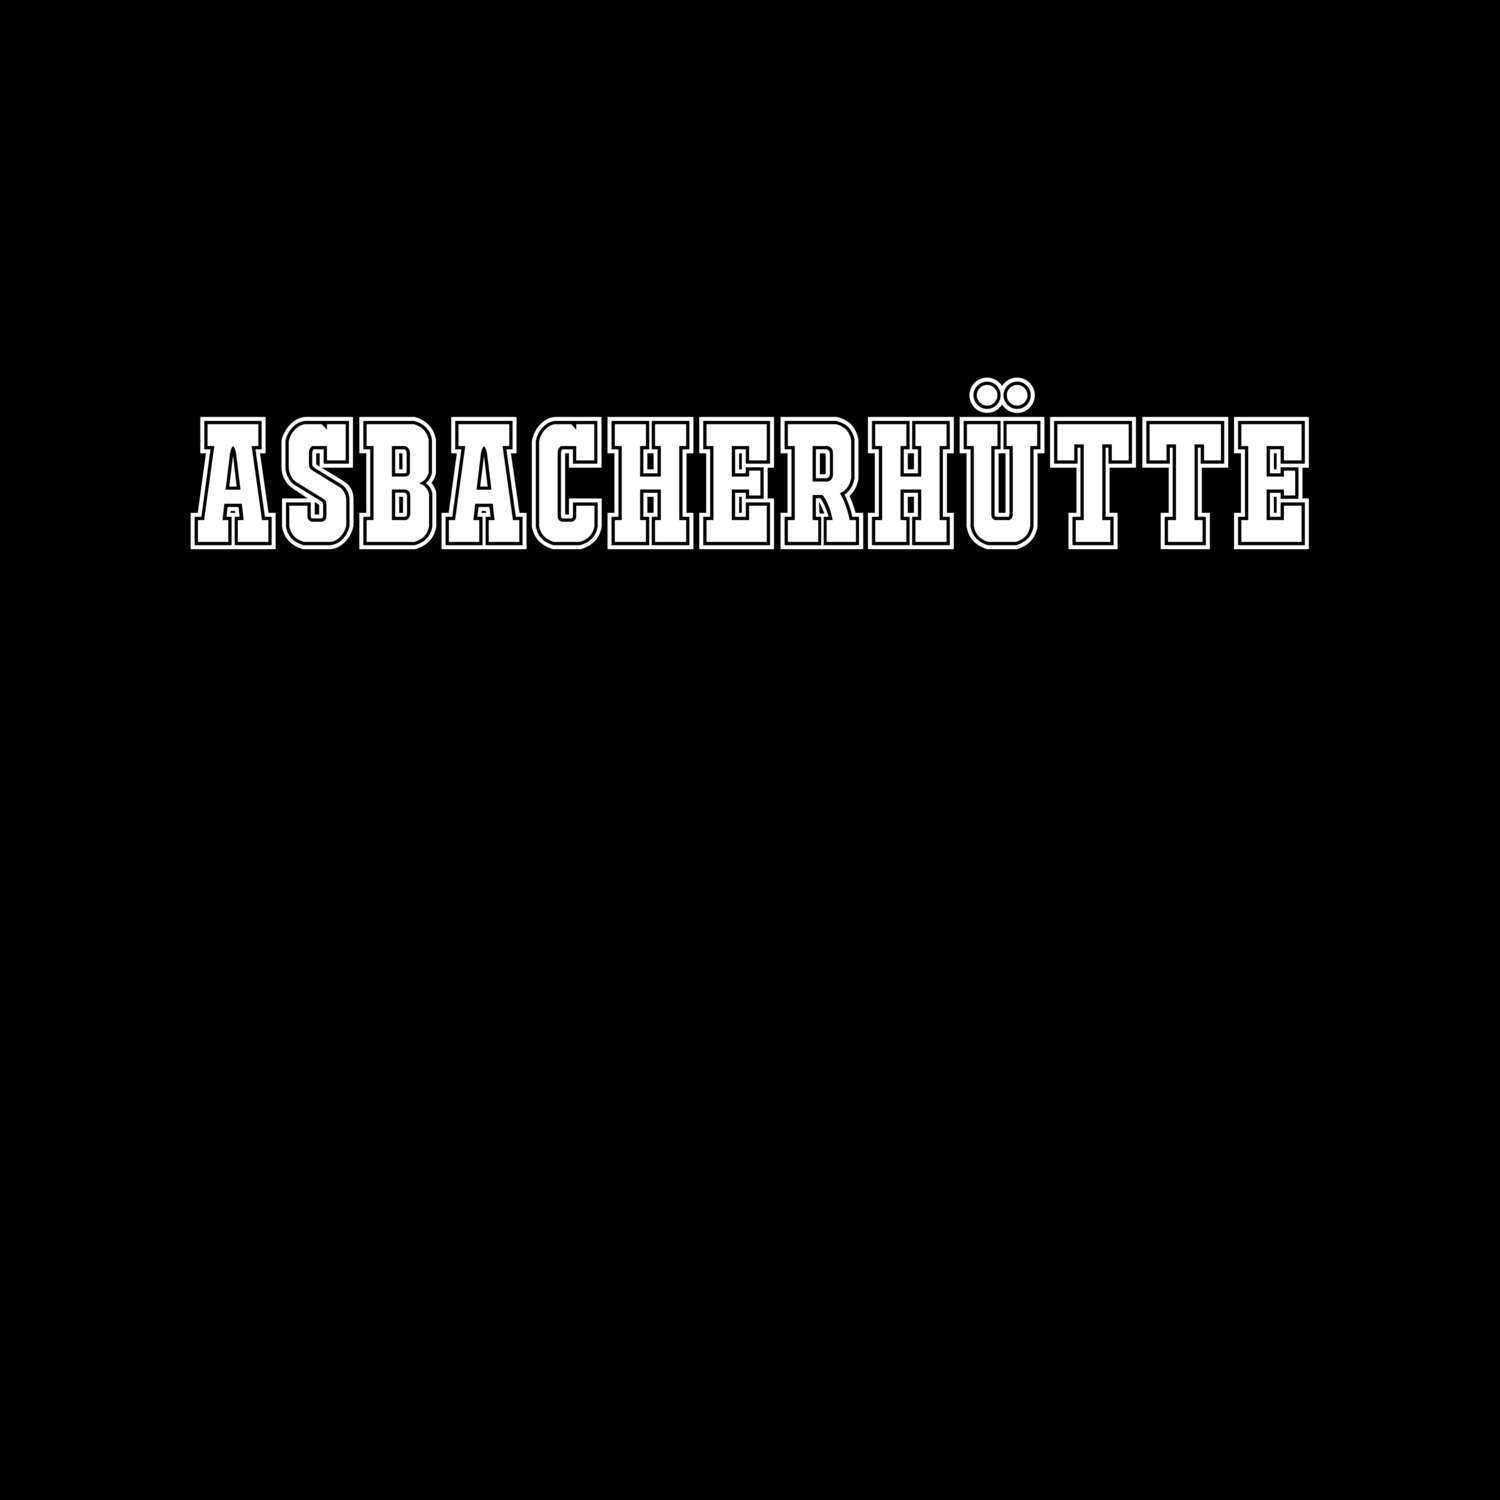 Asbacherhütte T-Shirt »Classic«